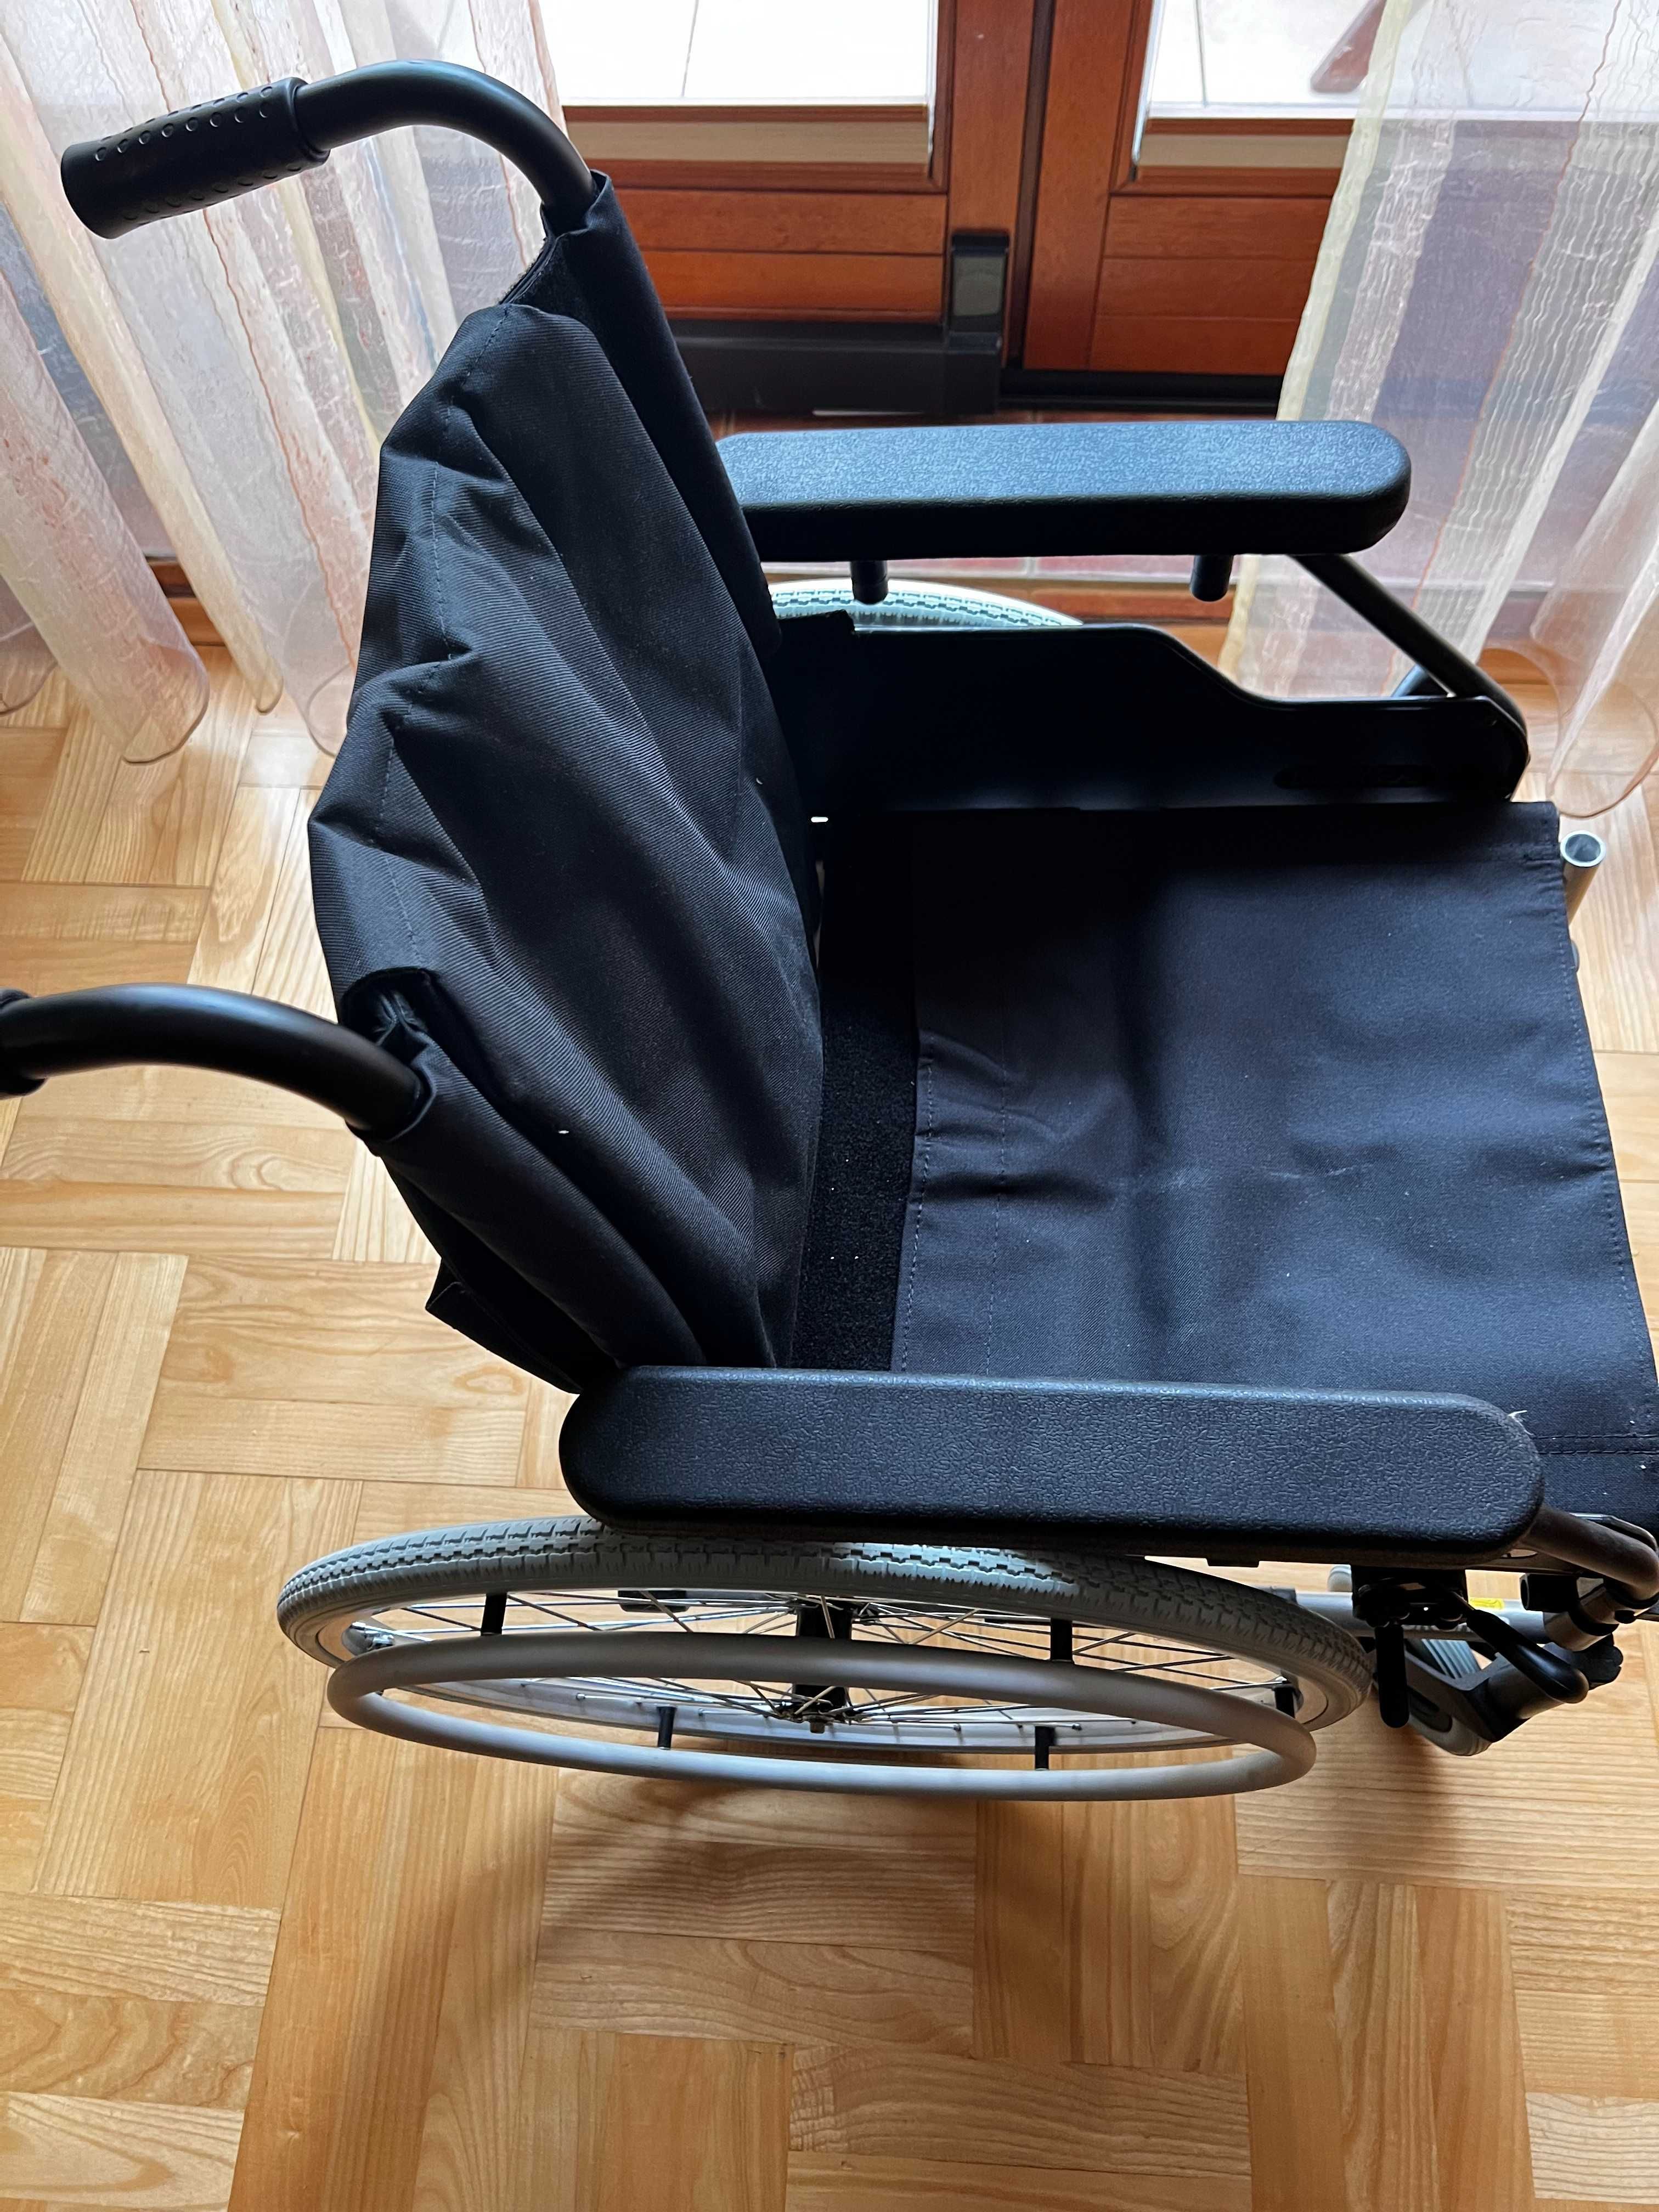 Wózek dla osoby niepełnosprawnej.